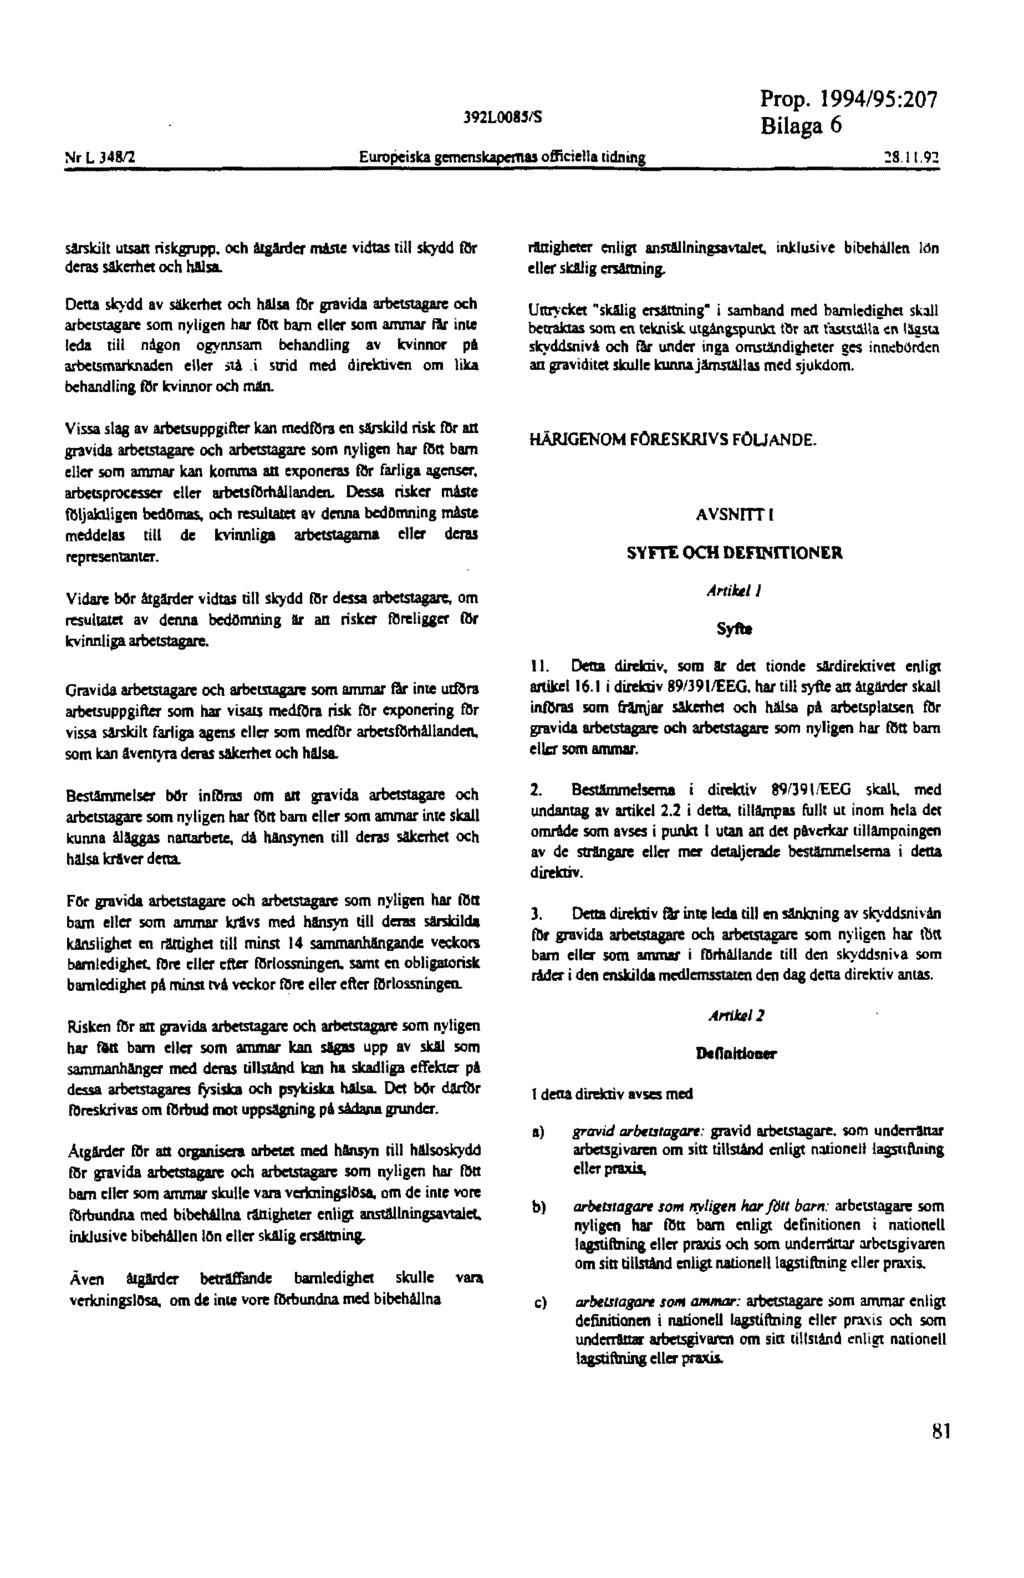 Nr L 34812 Euroiiciska gemenskapernas officiella tidning Prop. 1994/95:207 Bilaga 6 särskilt utsan riskgrupp. och ålgilrder måste vidtas till skydd f!